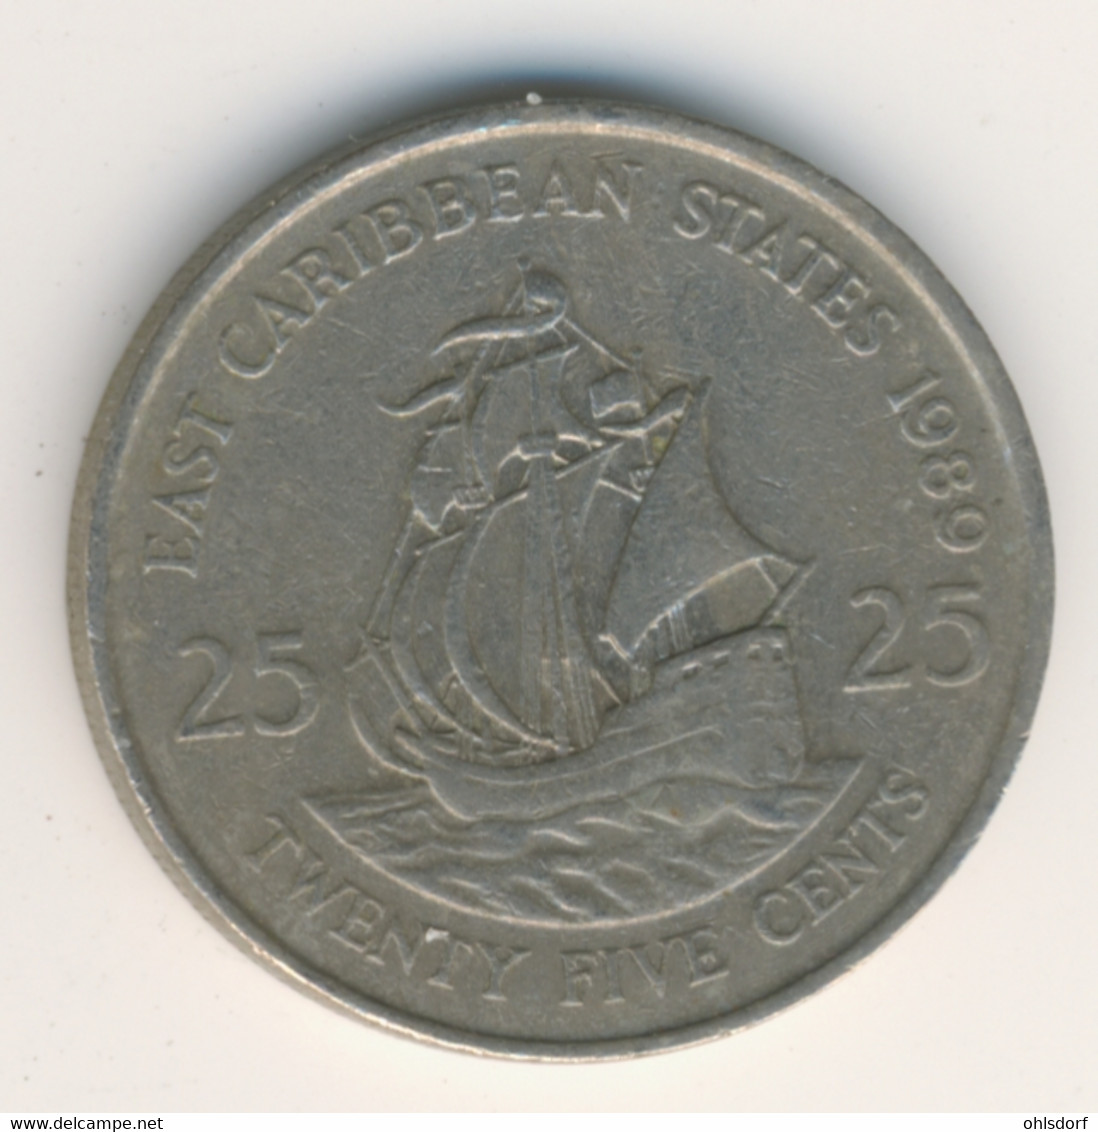 EAST CARIBBEAN STATES 1989: 25 Cents, KM 14 - Caraïbes Orientales (Etats Des)